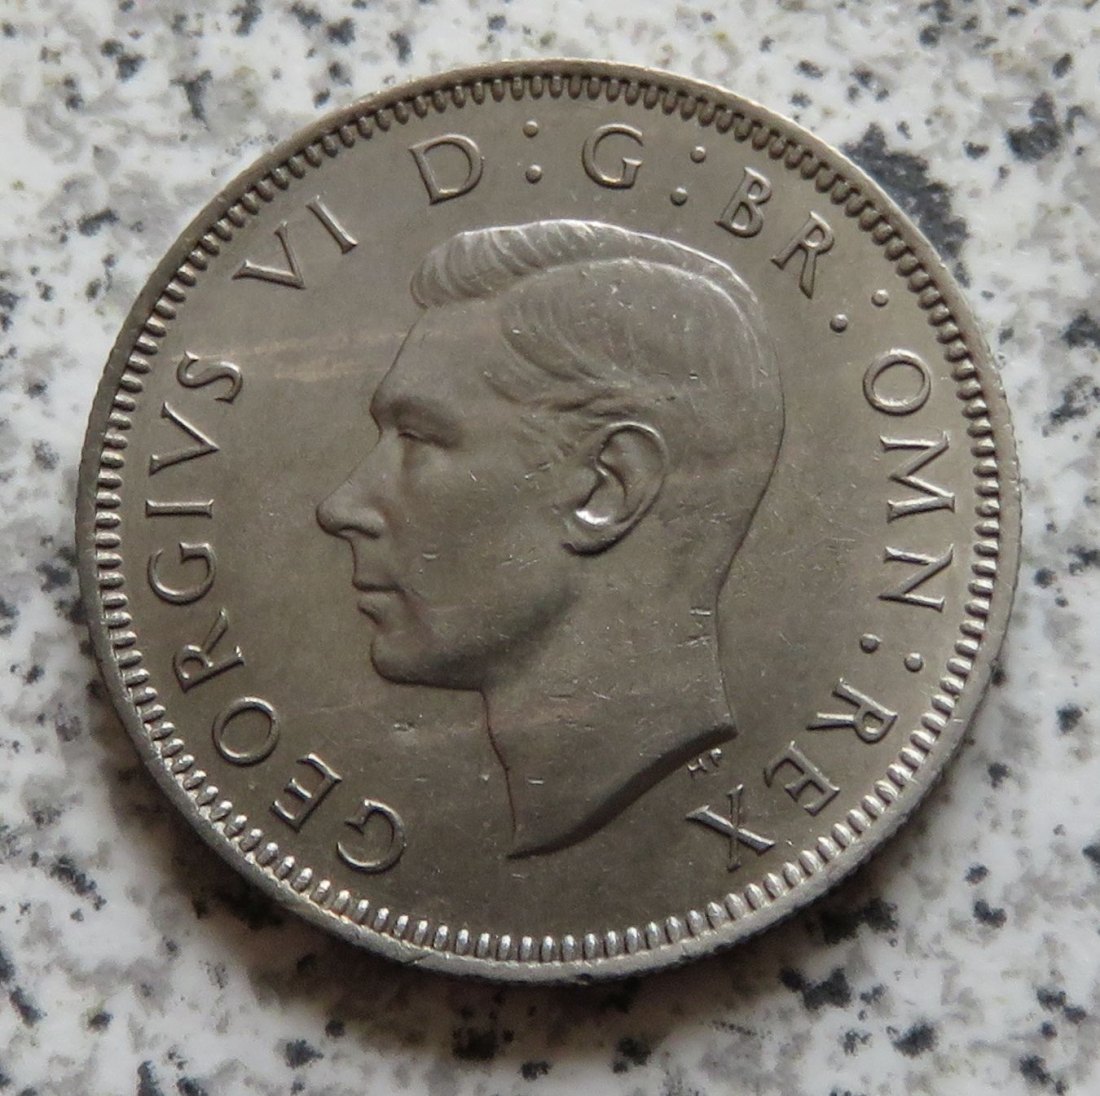  Großbritannien 1 Shilling 1947, Englisch, Erhaltung (2)   